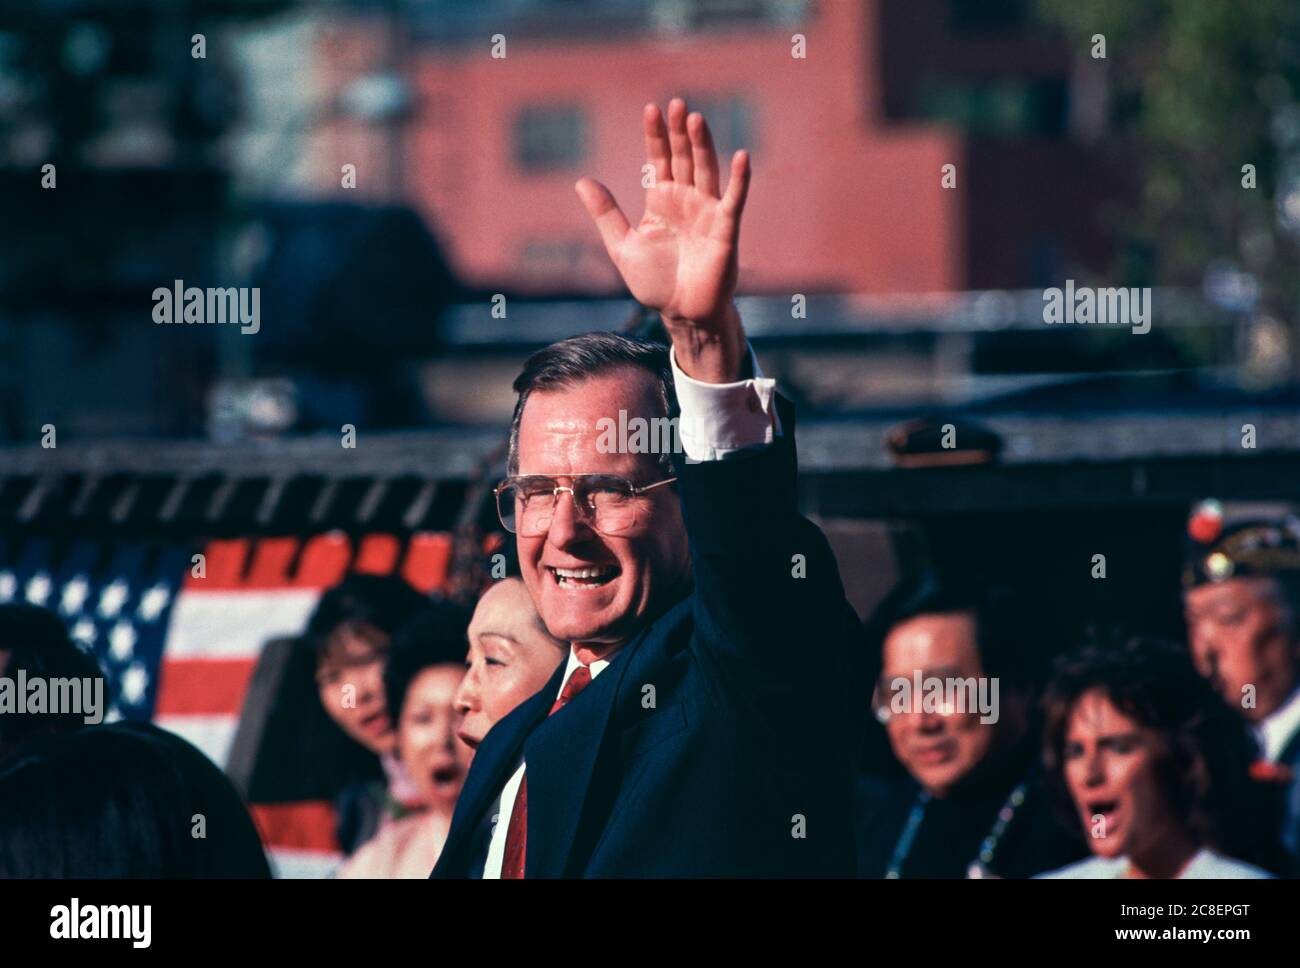 George Bush, George Herbert Walker Bush (1924-2018) in San Francisco Chinatown während seiner Präsidentschaftskampagne 1988. Republikaner, George H.W. Bush wurde der 41. Präsident der Vereinigten Staaten, 1989 bis 1993. Stockfoto